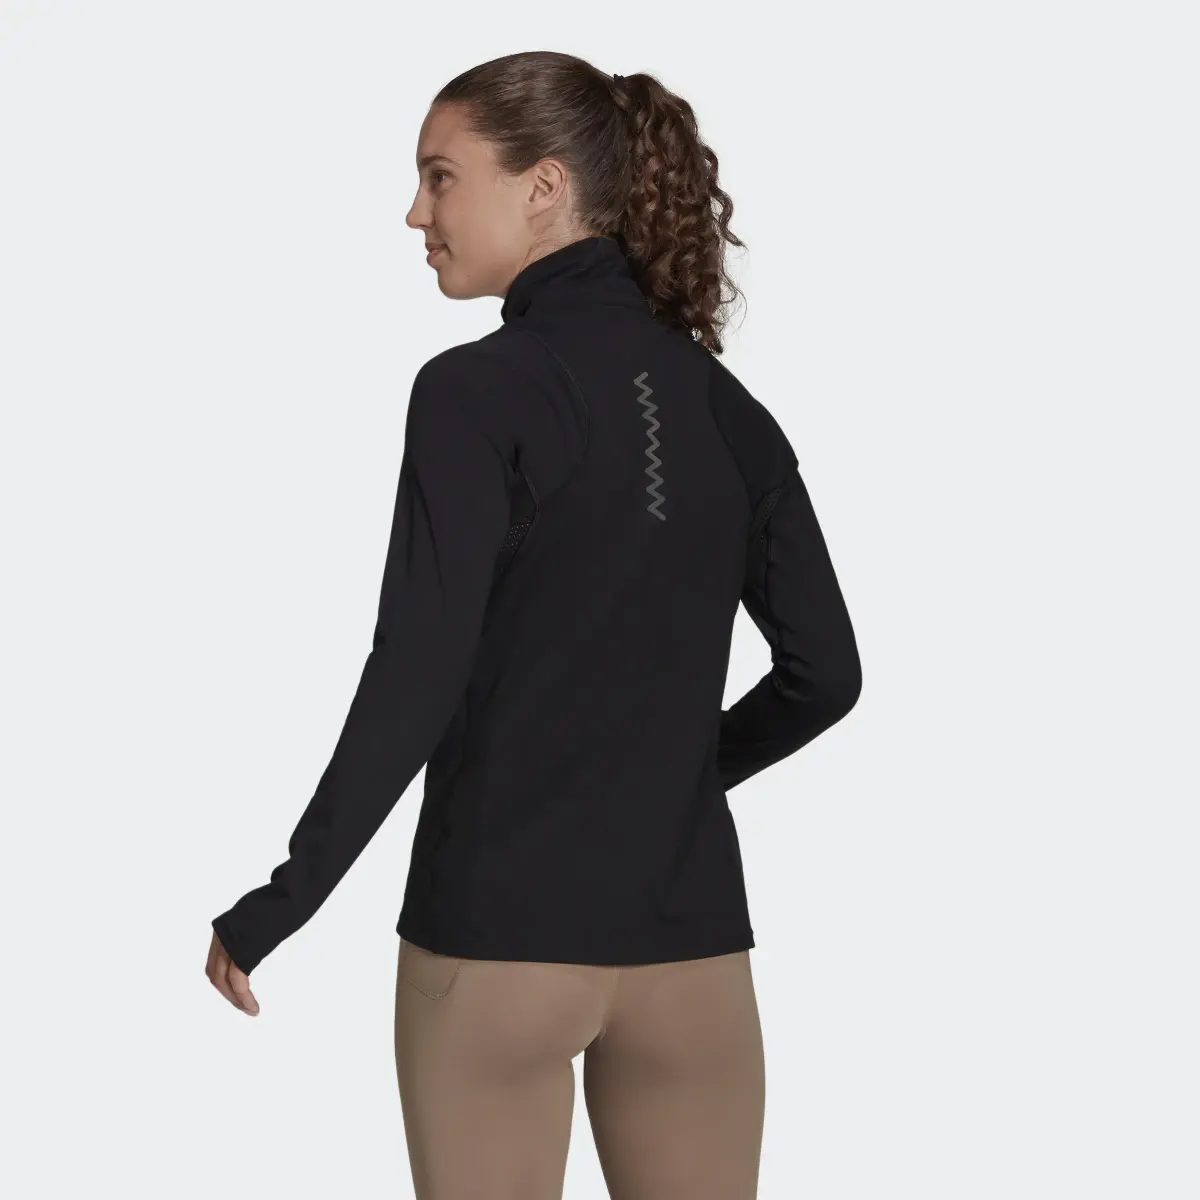 Adidas Run Fast Half-Zip Long Sleeve Sweatshirt. 3